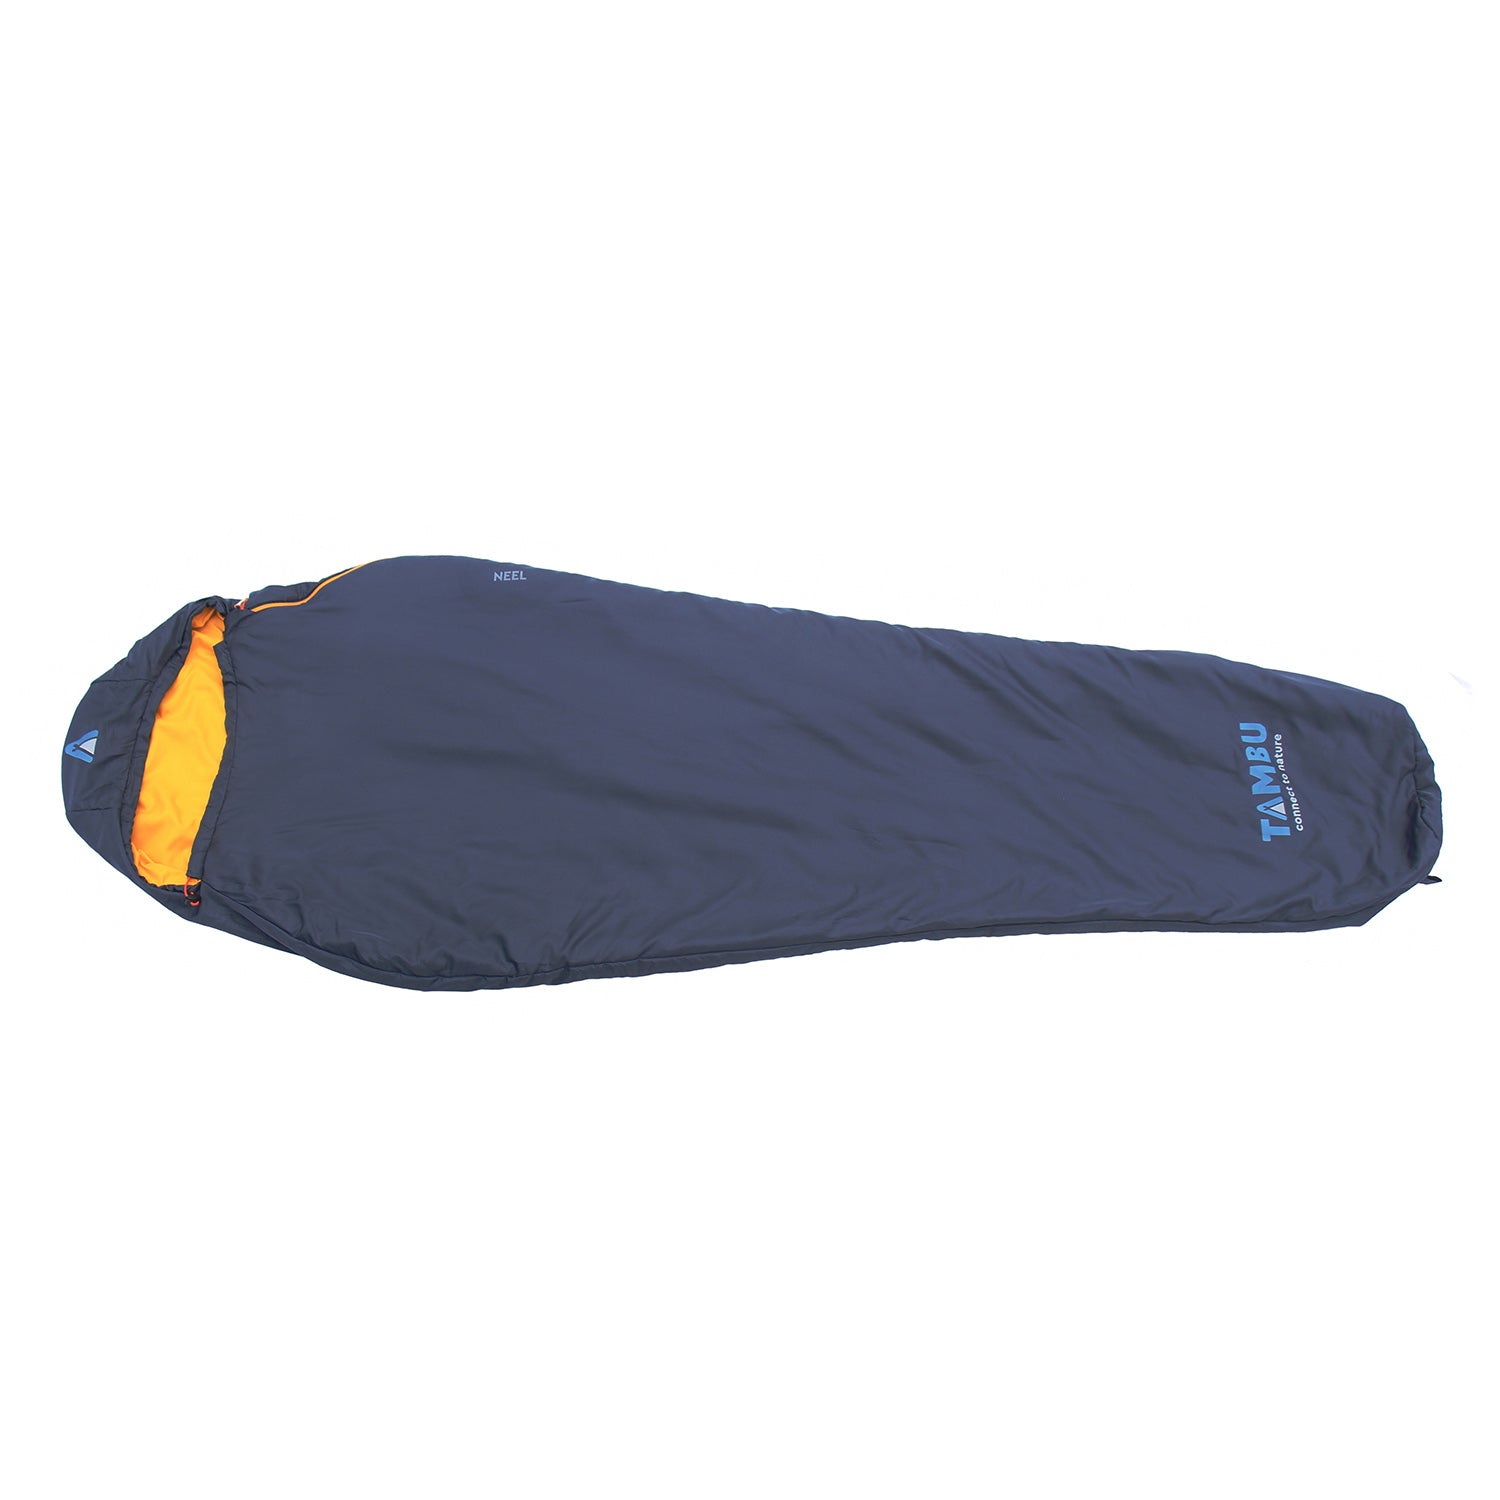 NEEL | mummy sleeping bag 750 gr